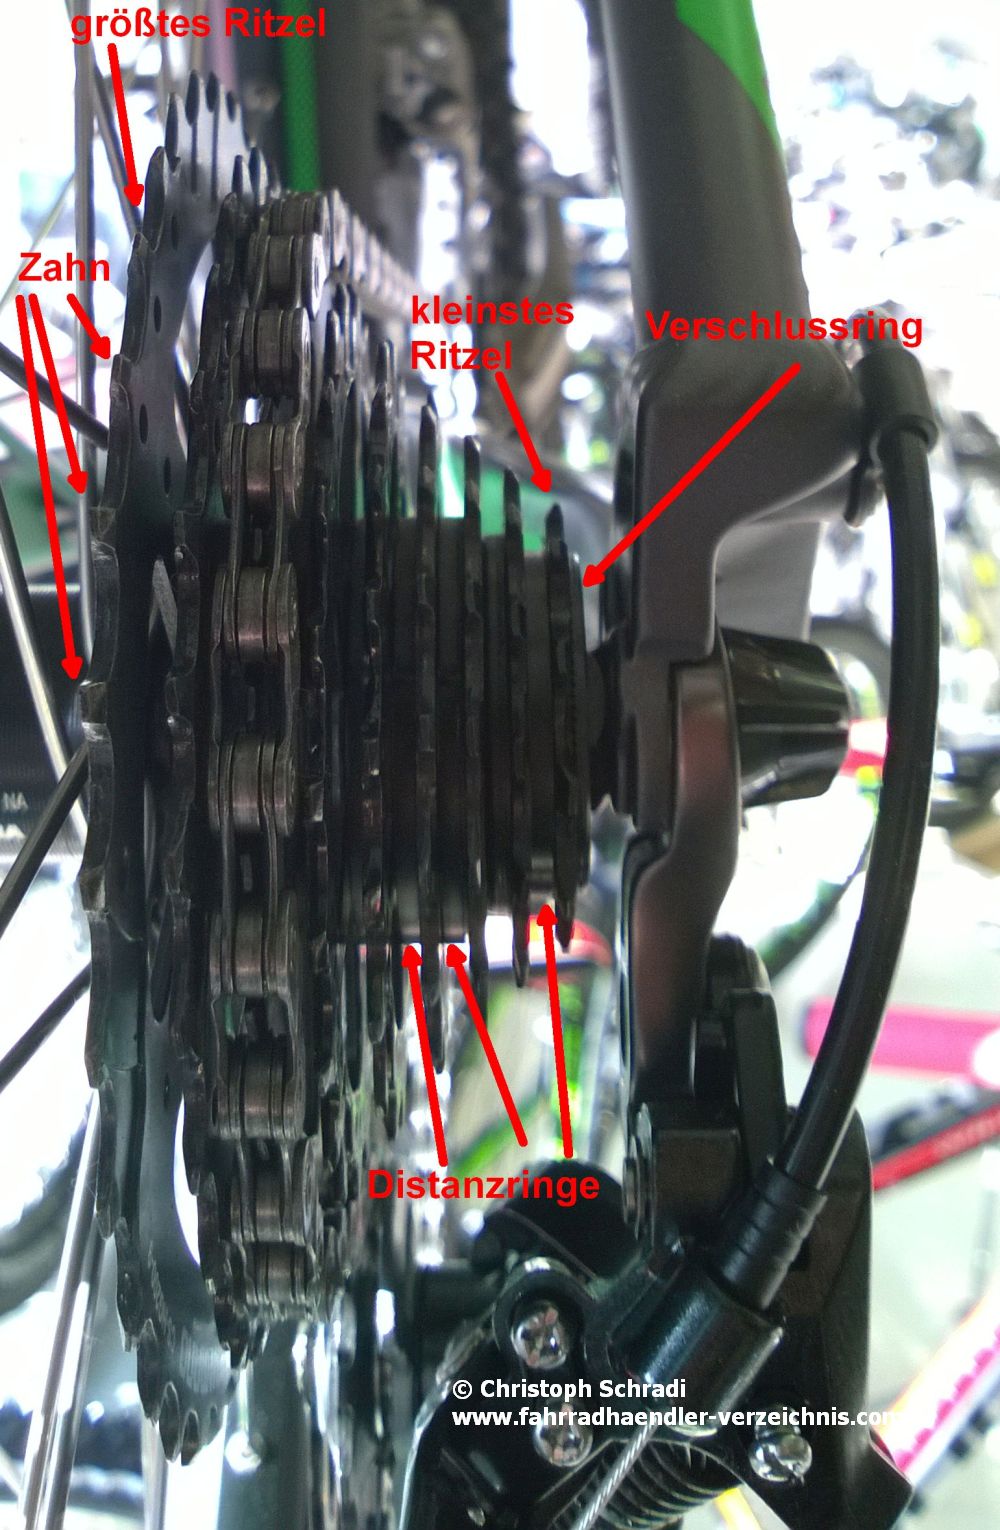 Einsteigerritzelpaket von Shimano an einem Fahrrad von hinten gesehen